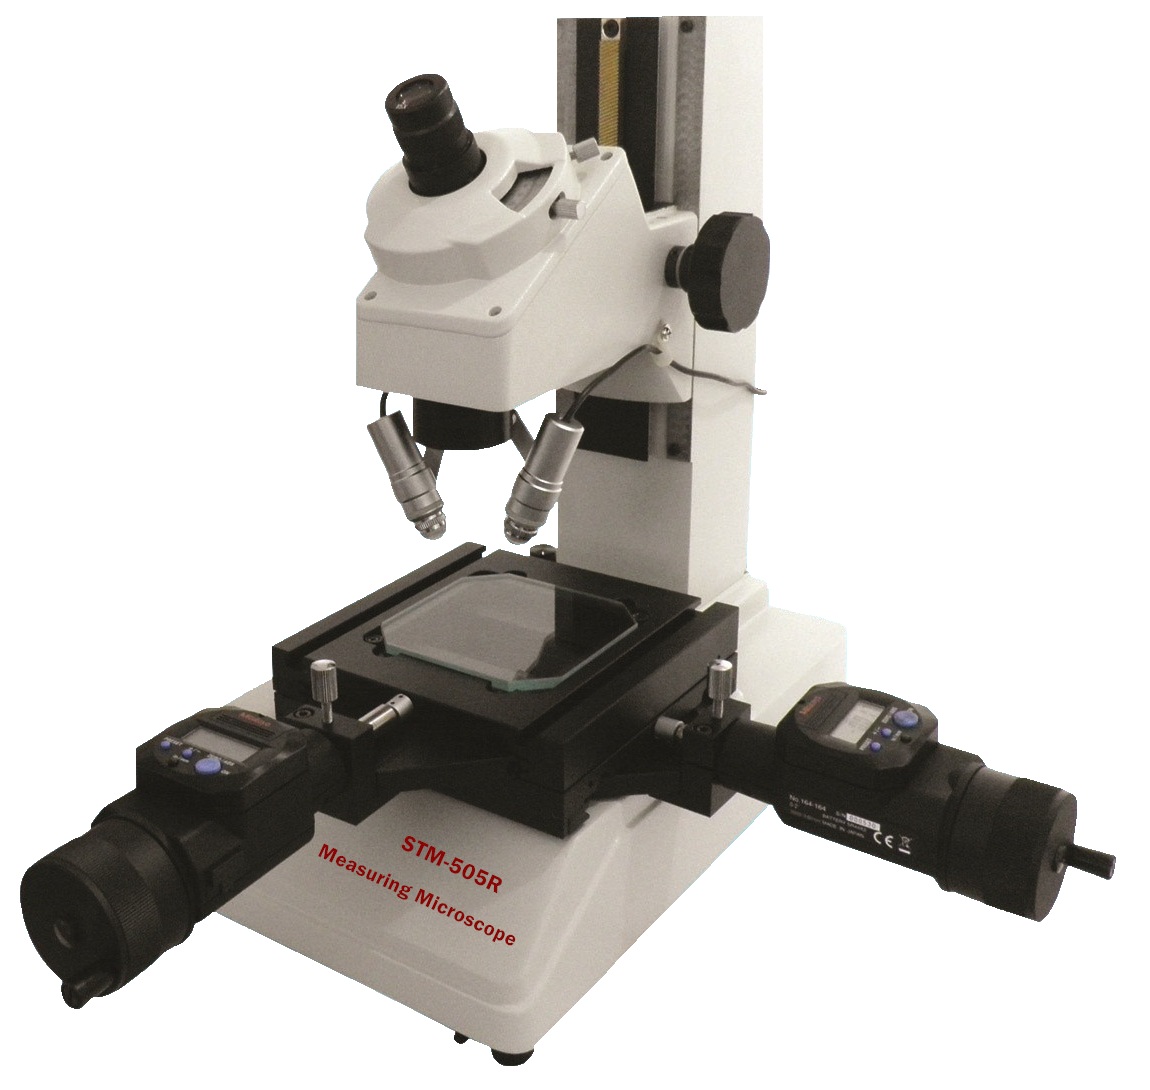 Tool-Maker��s Microscopes STM-505R